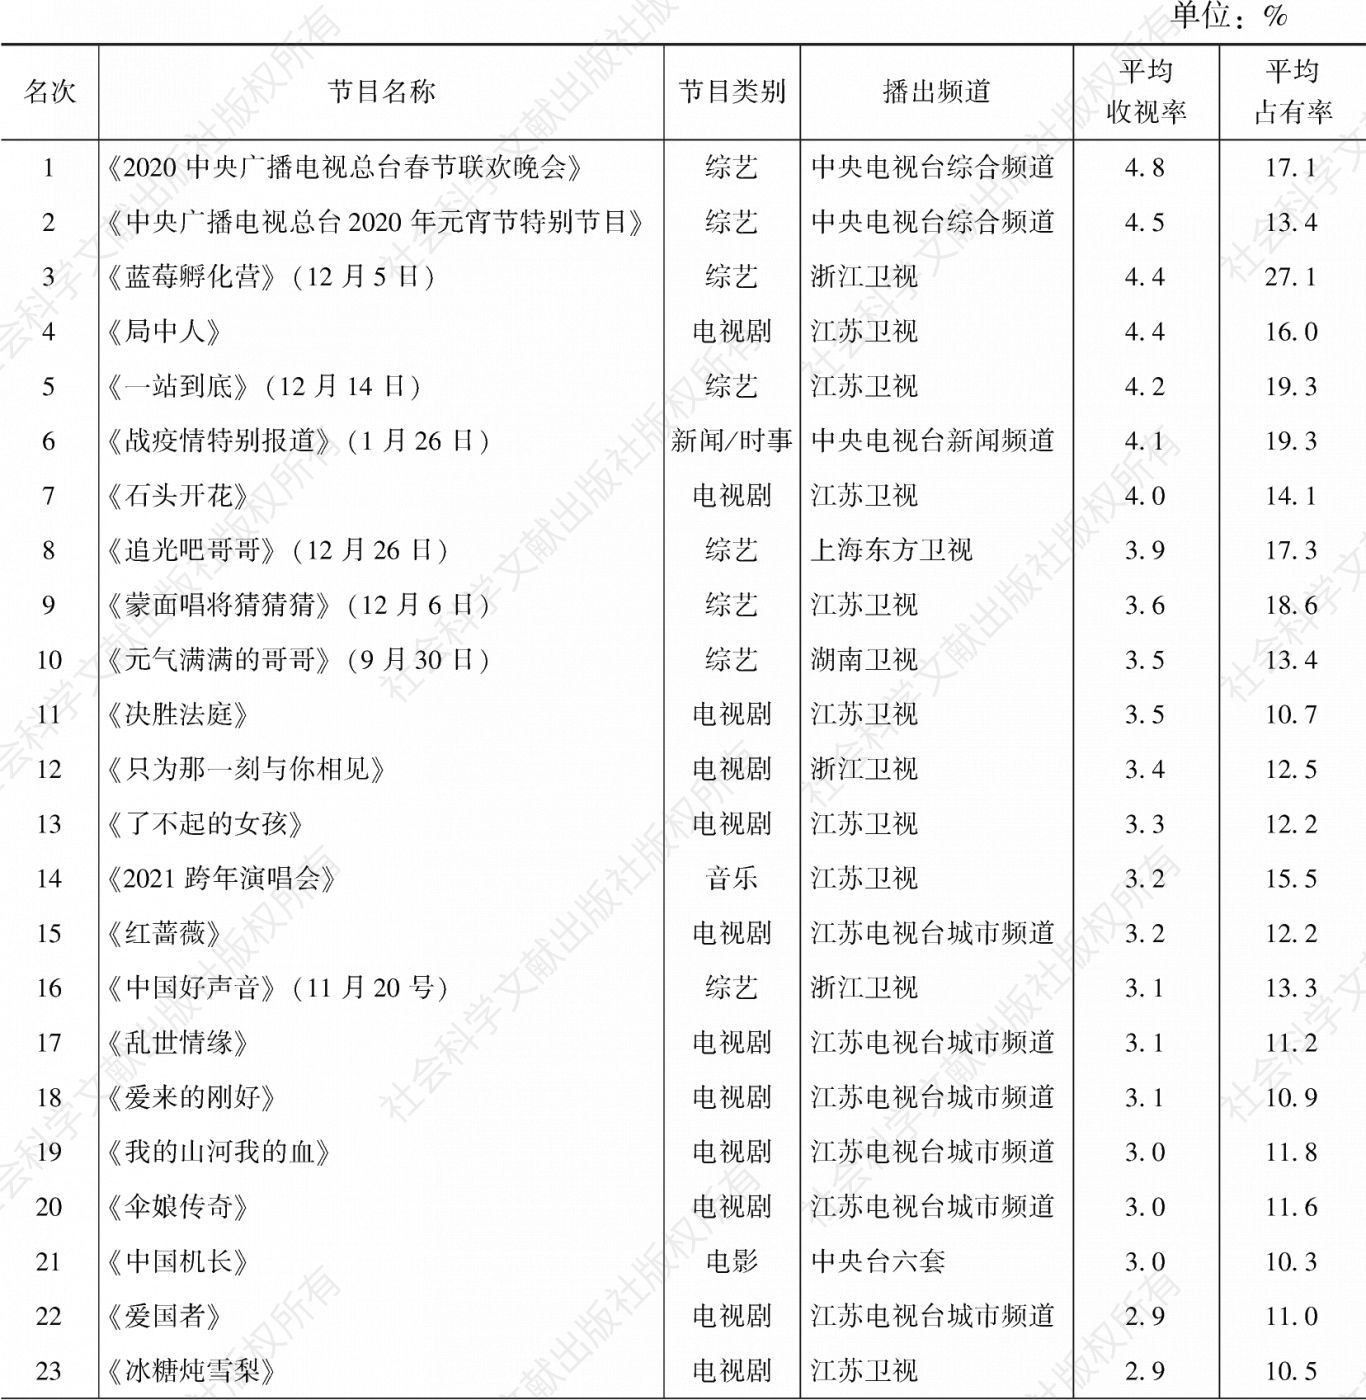 表3.47.7 2020年南京市场所有节目收视率排名前30